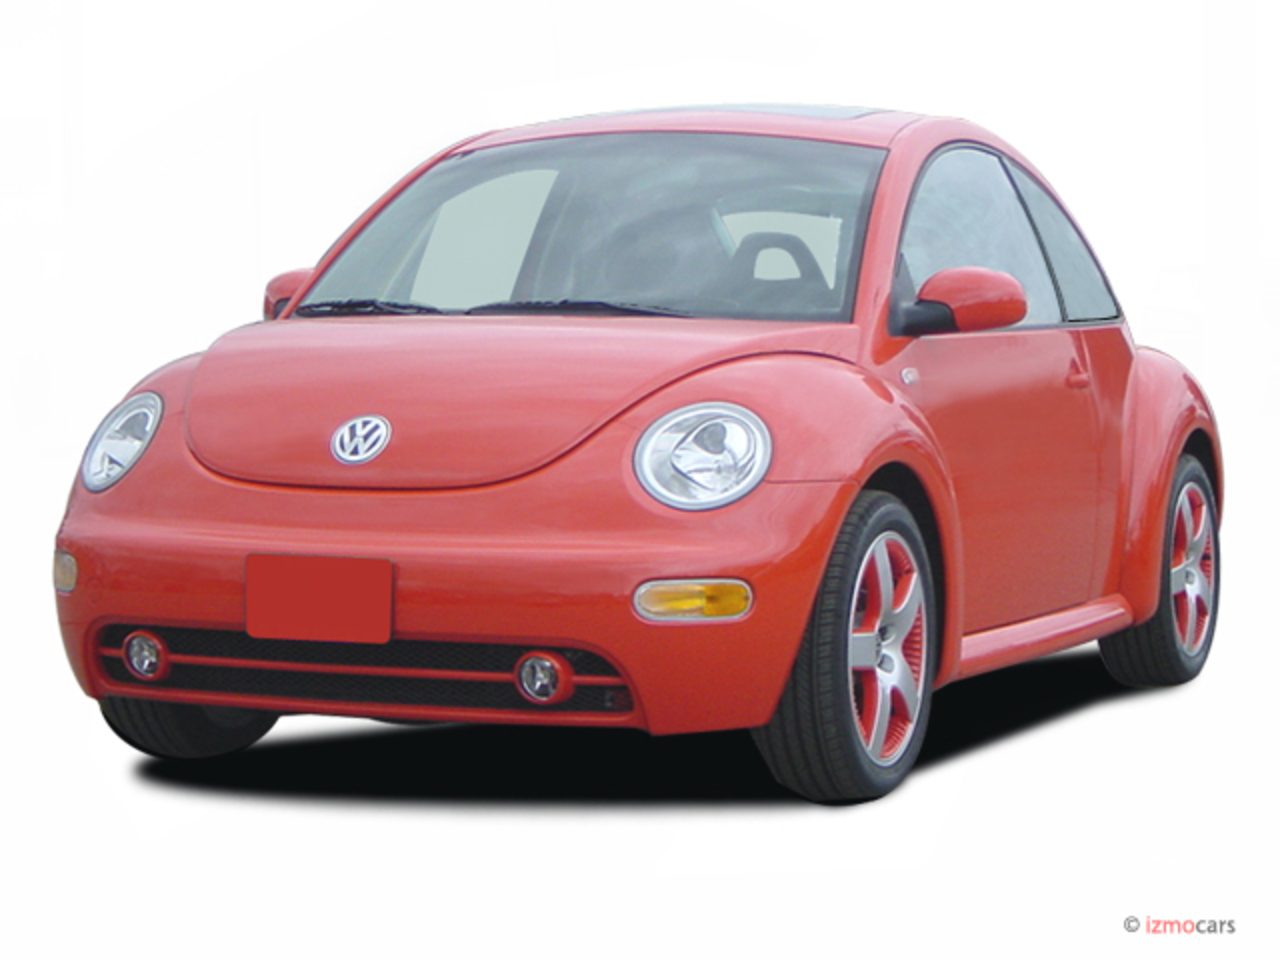 Volkswagen New Beetle 20 GLS. View Download Wallpaper. 640x480. Comments